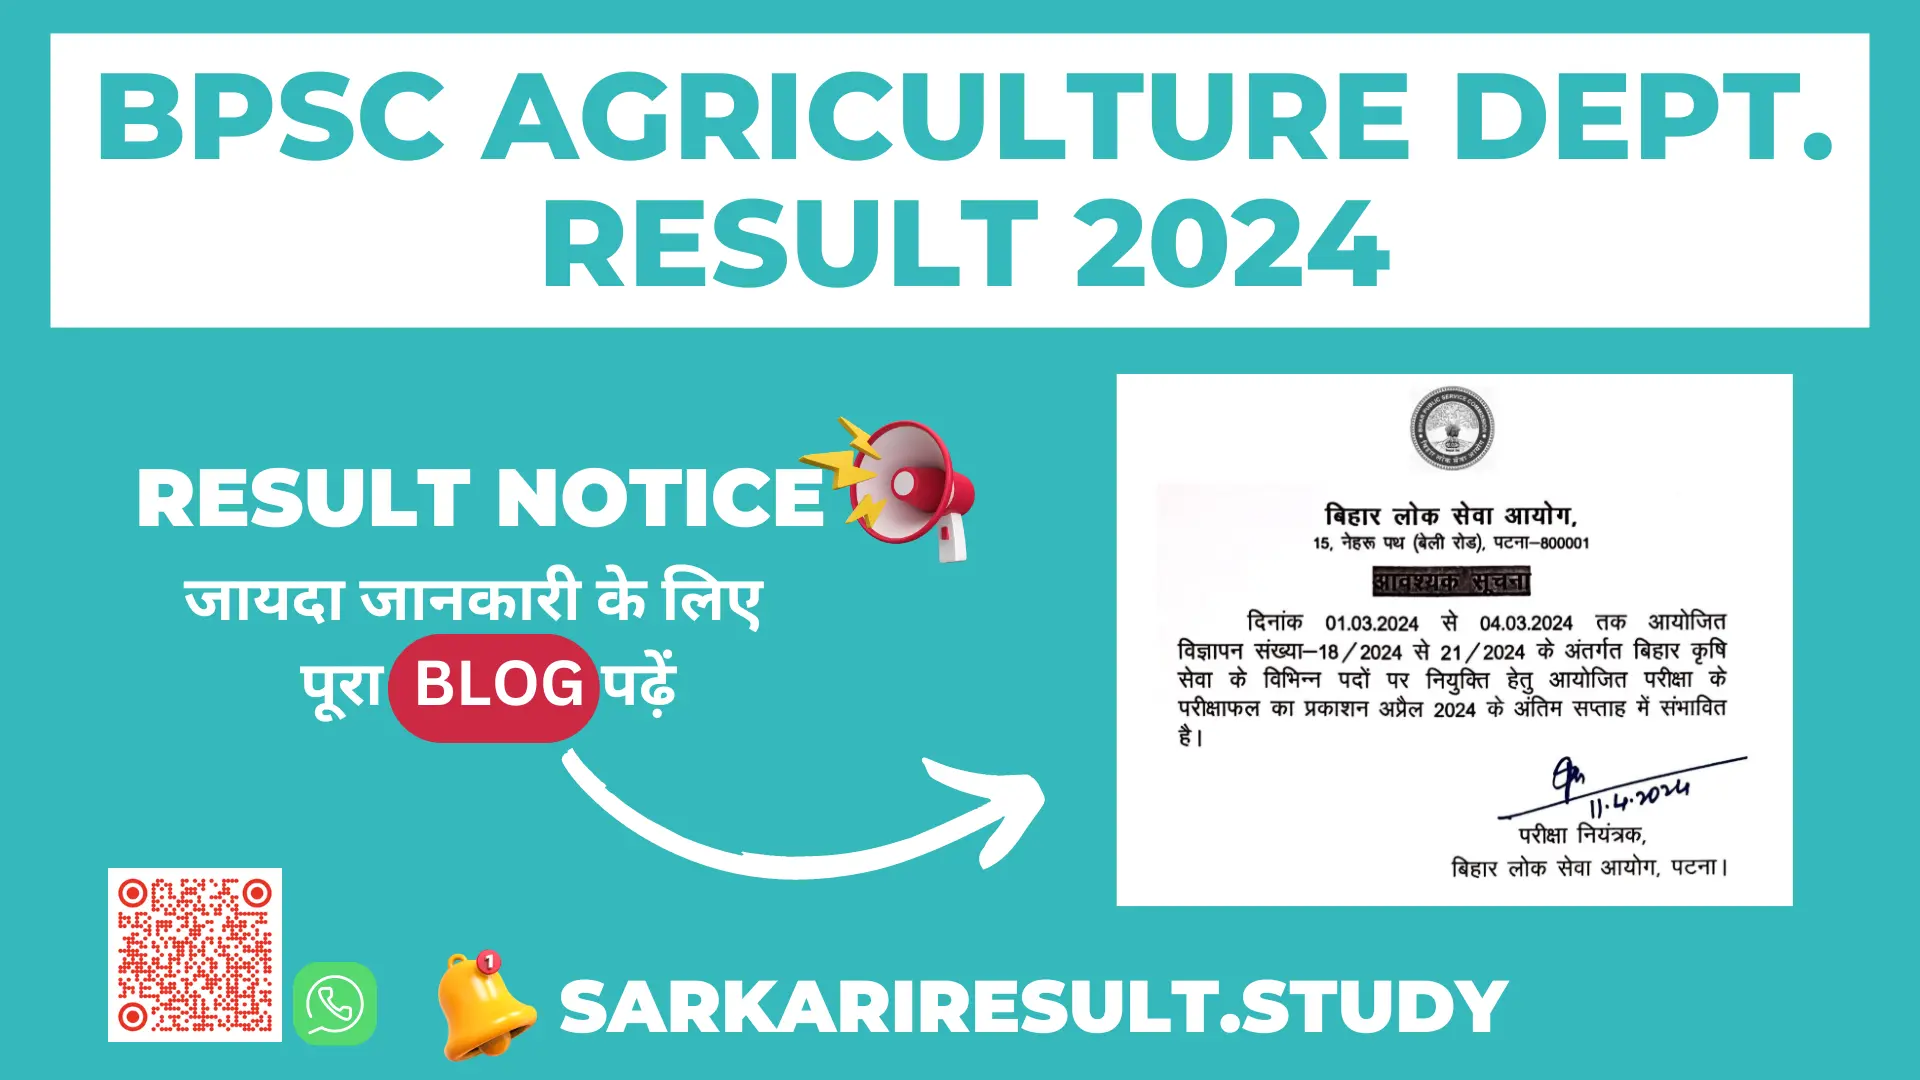 BPSC Agriculture Dept. Result 2024